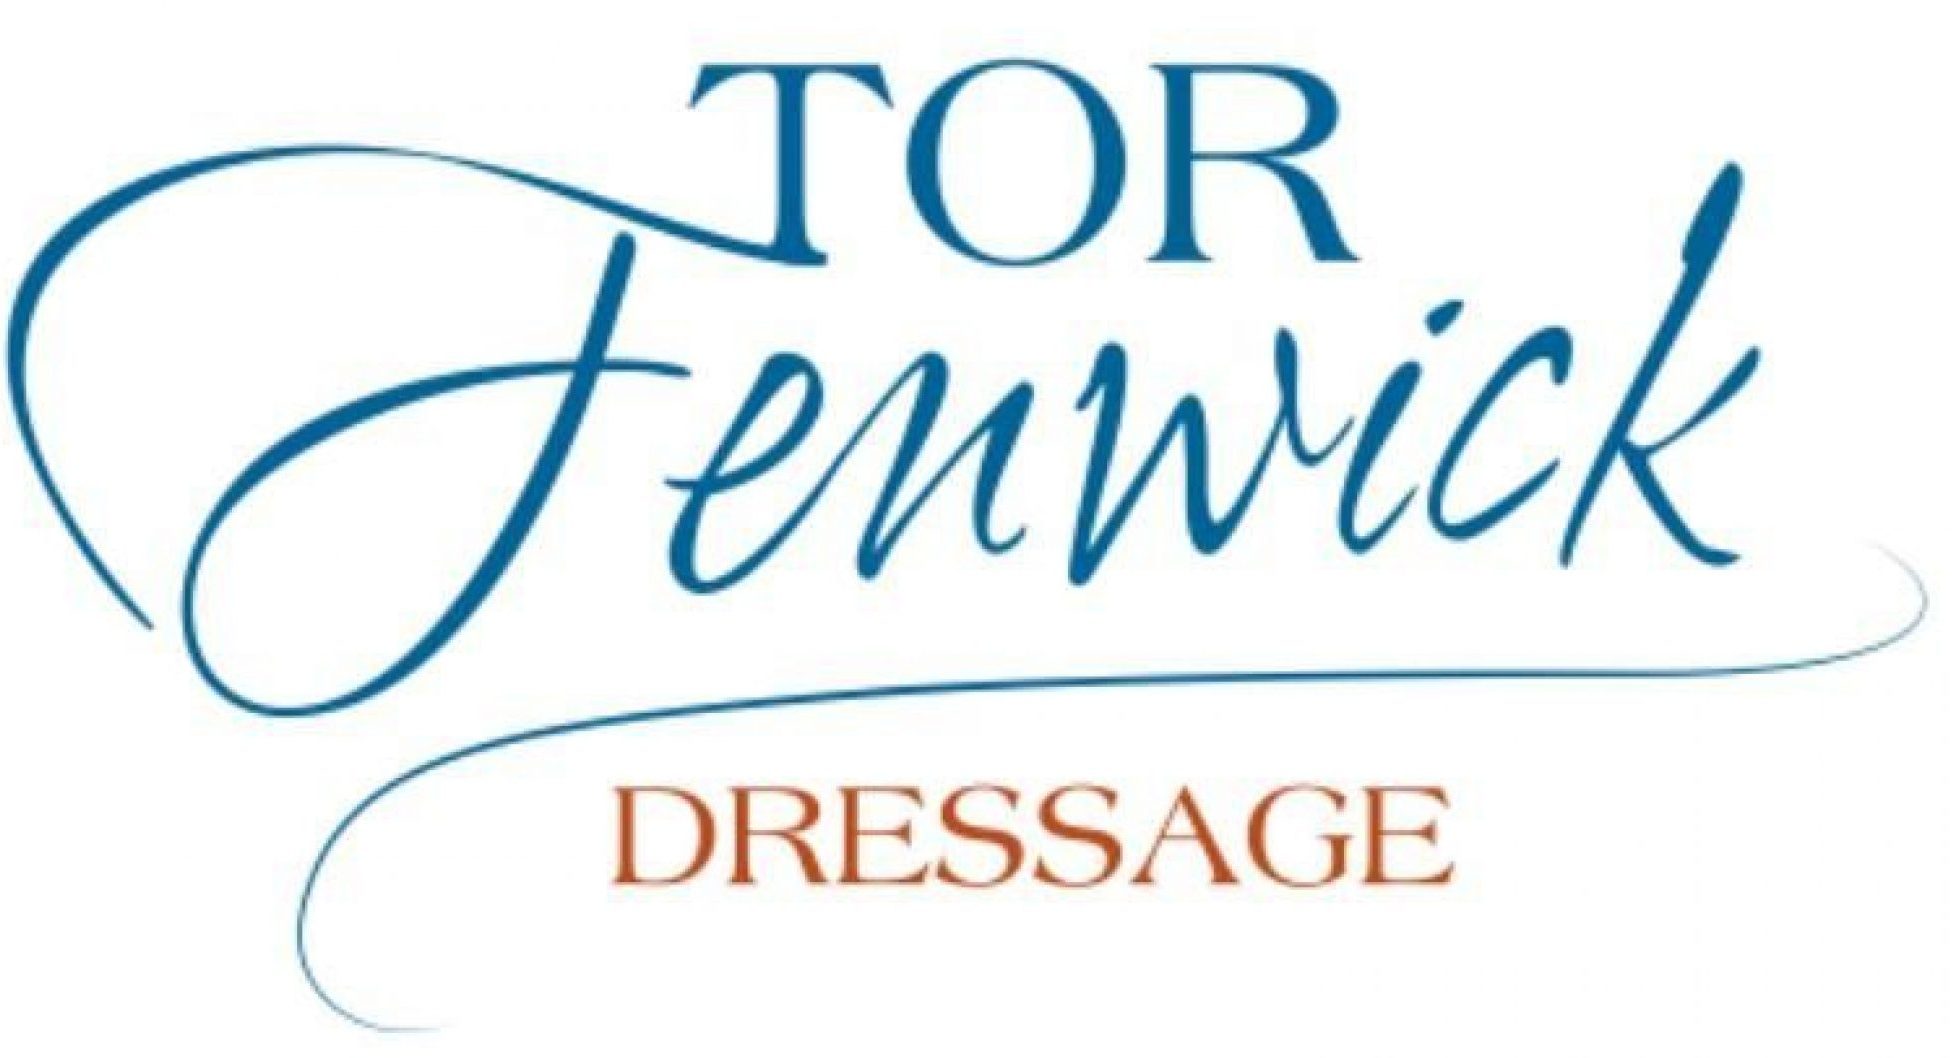 Tor Fenwick Dressage